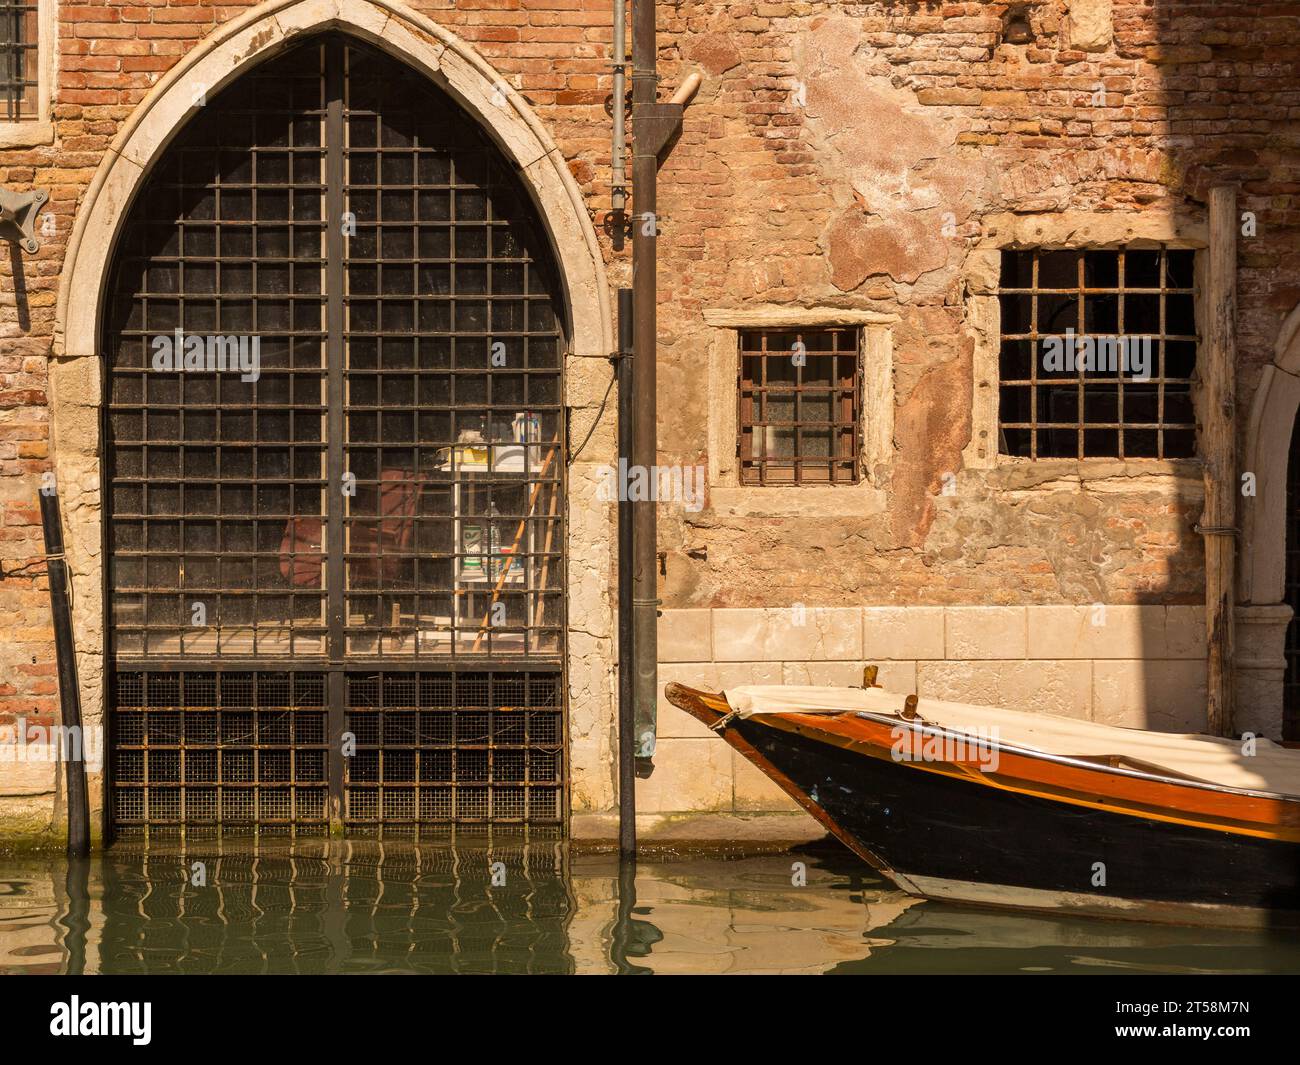 Diese ockerfarbene Fassade einer venezianischen Villa ist mit einem Portikus und zwei gegrillten Fenstern dekoriert. Ein mit einer Plane bedecktes Boot ist an seinem verankert Stockfoto